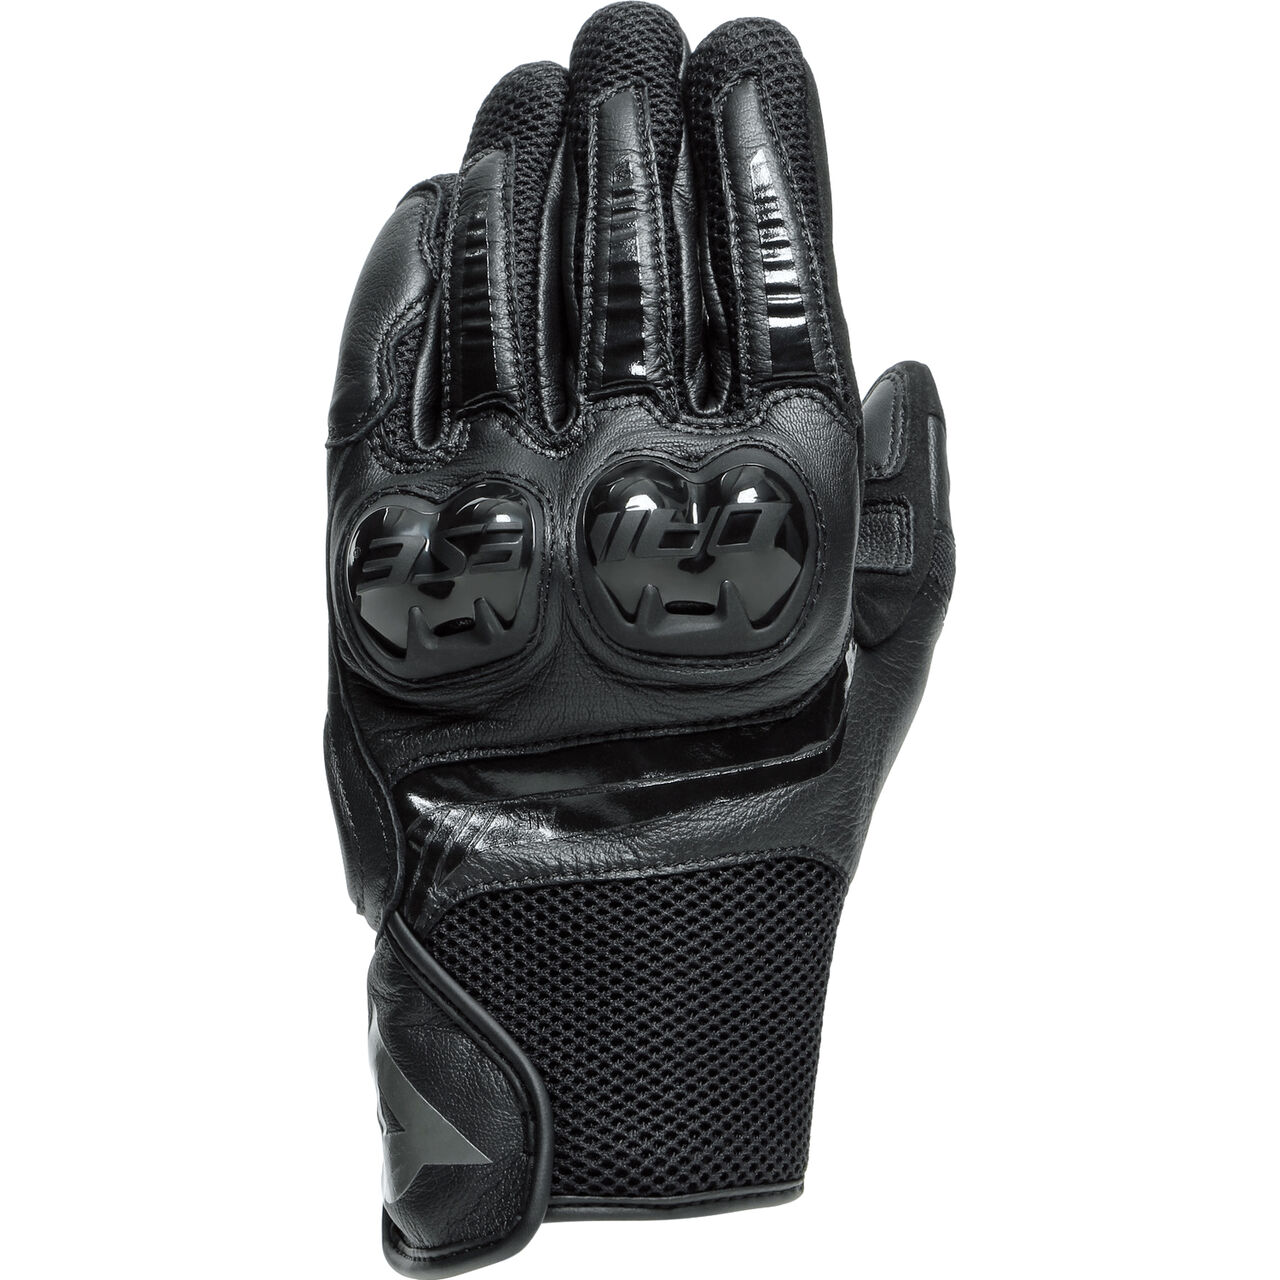 Mig 3 Handschuh kurz schwarz